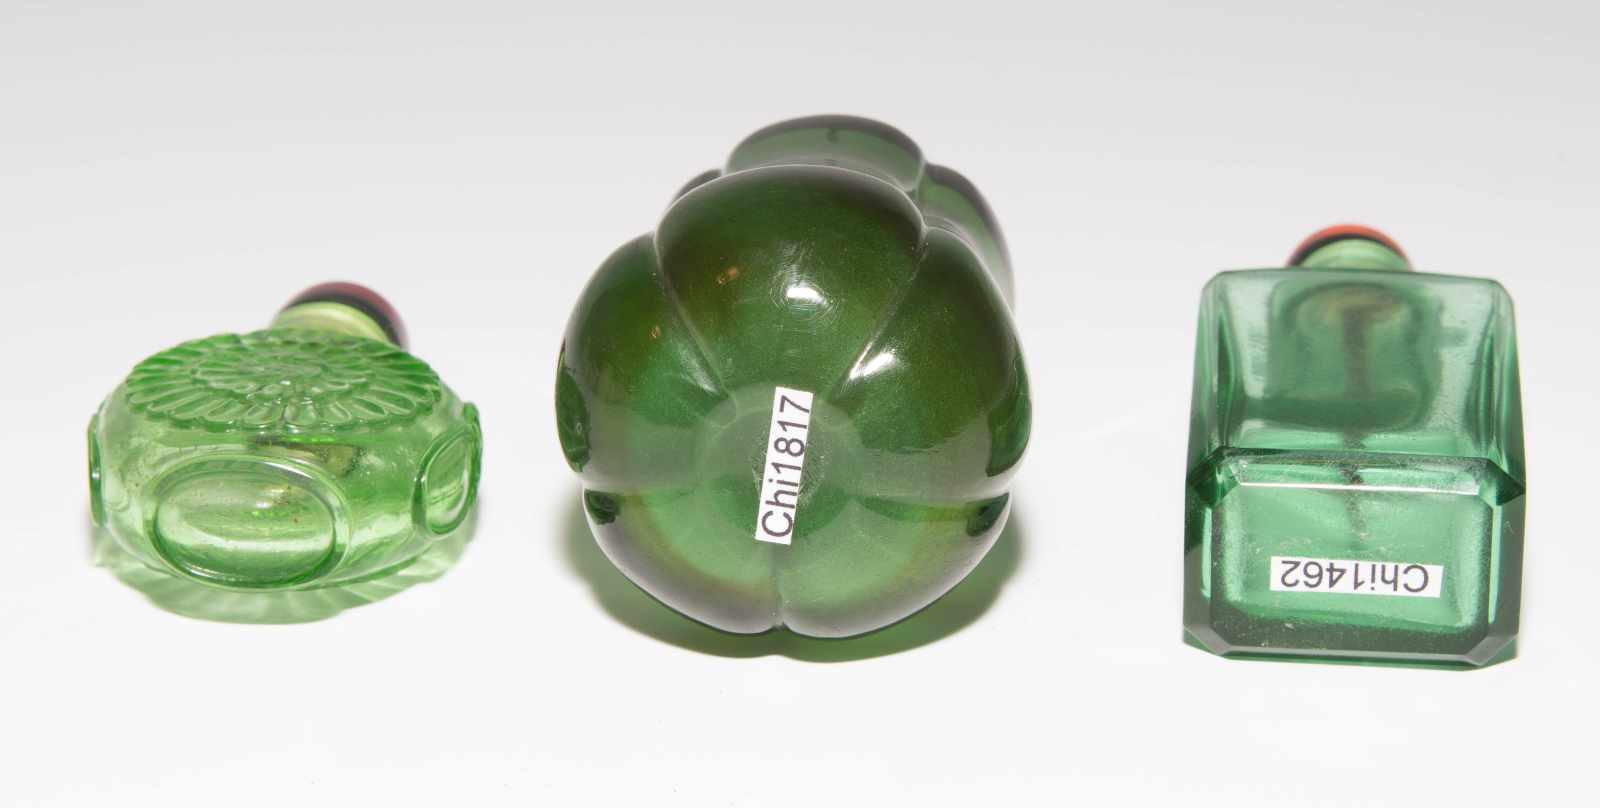 9 Glas Snuff BottlesChina. Transparentes Glas in verschiedenen Grüntönen, ein Snuff Bottle aus - Image 6 of 22